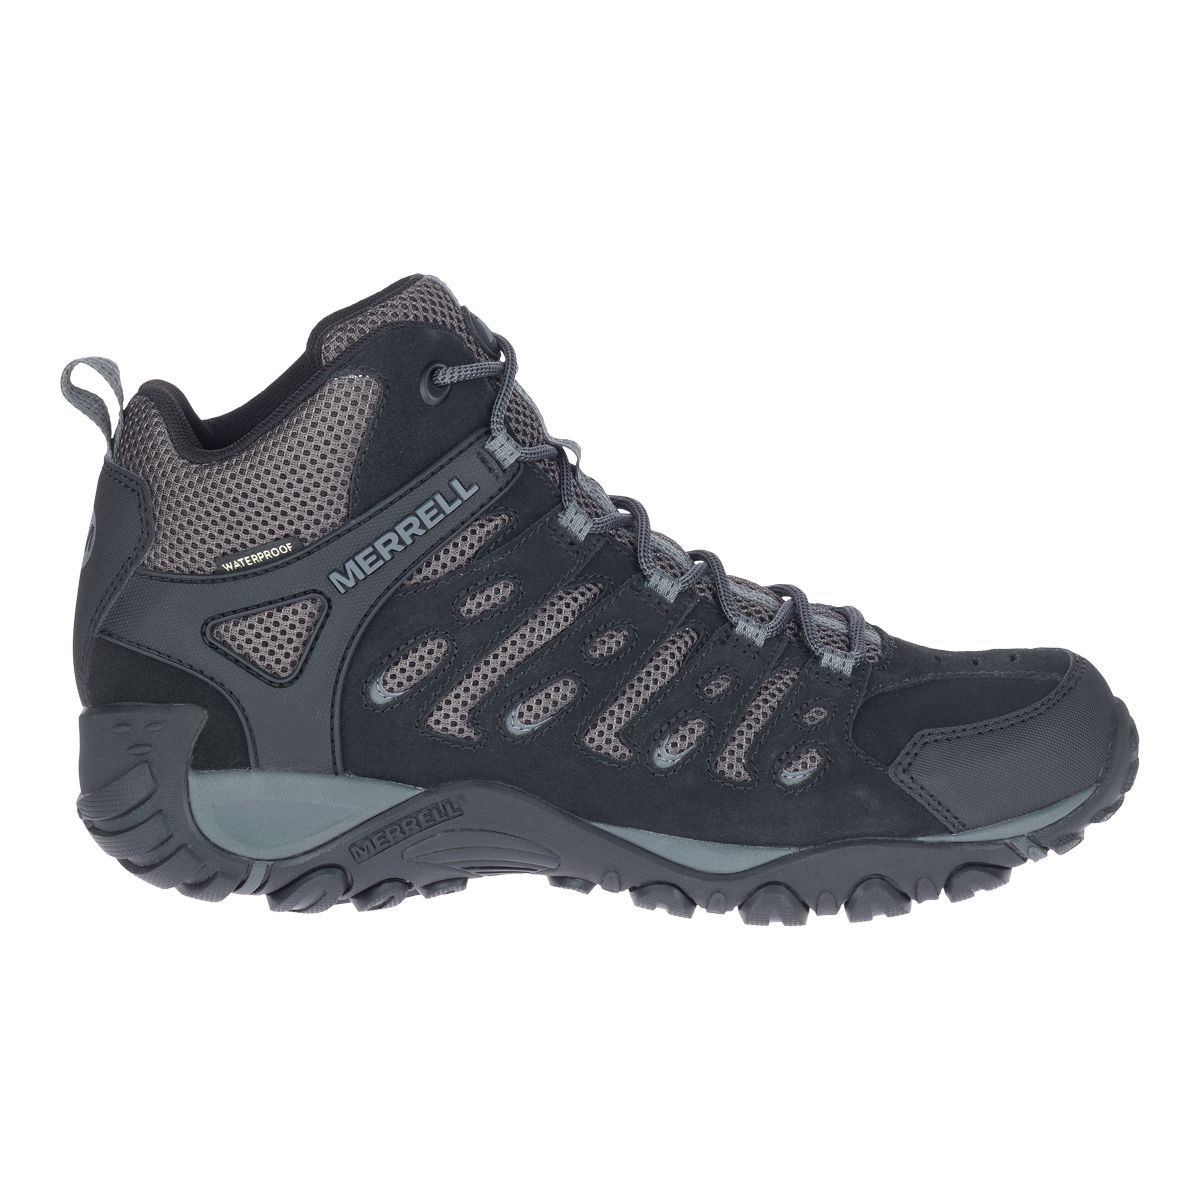 Merrell Men's Crosslander 2 Hiking Boots  Waterproof